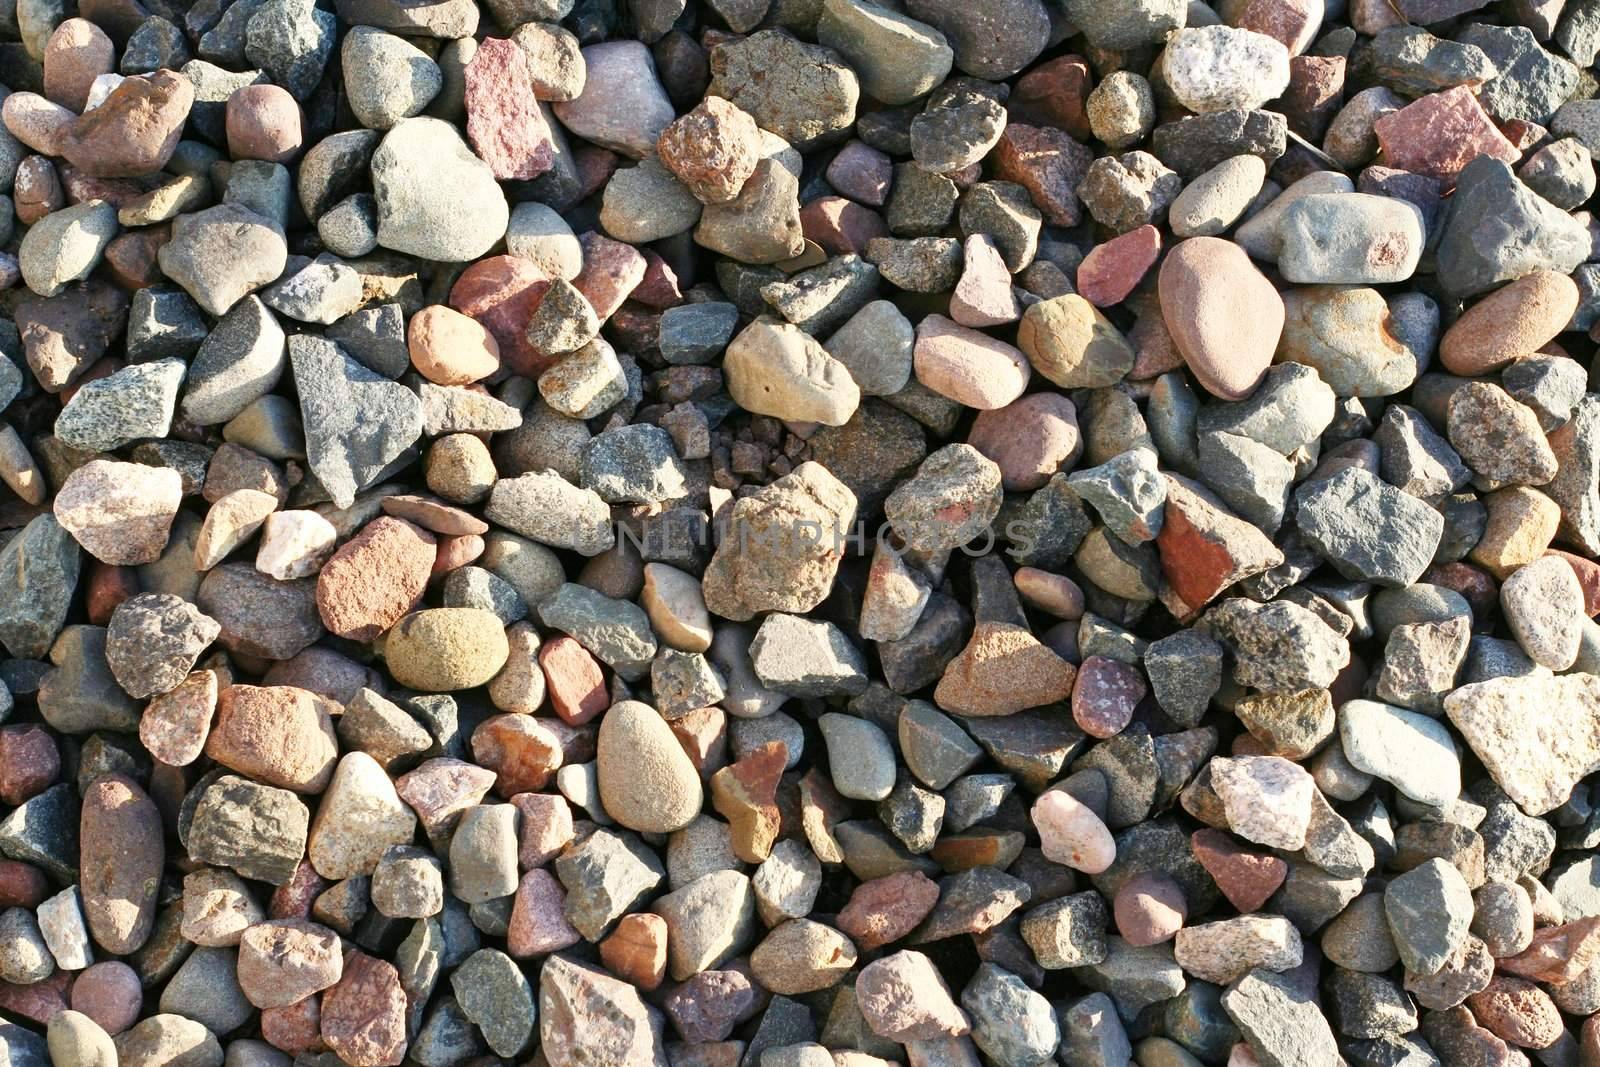 Pea gravel by jarenwicklund